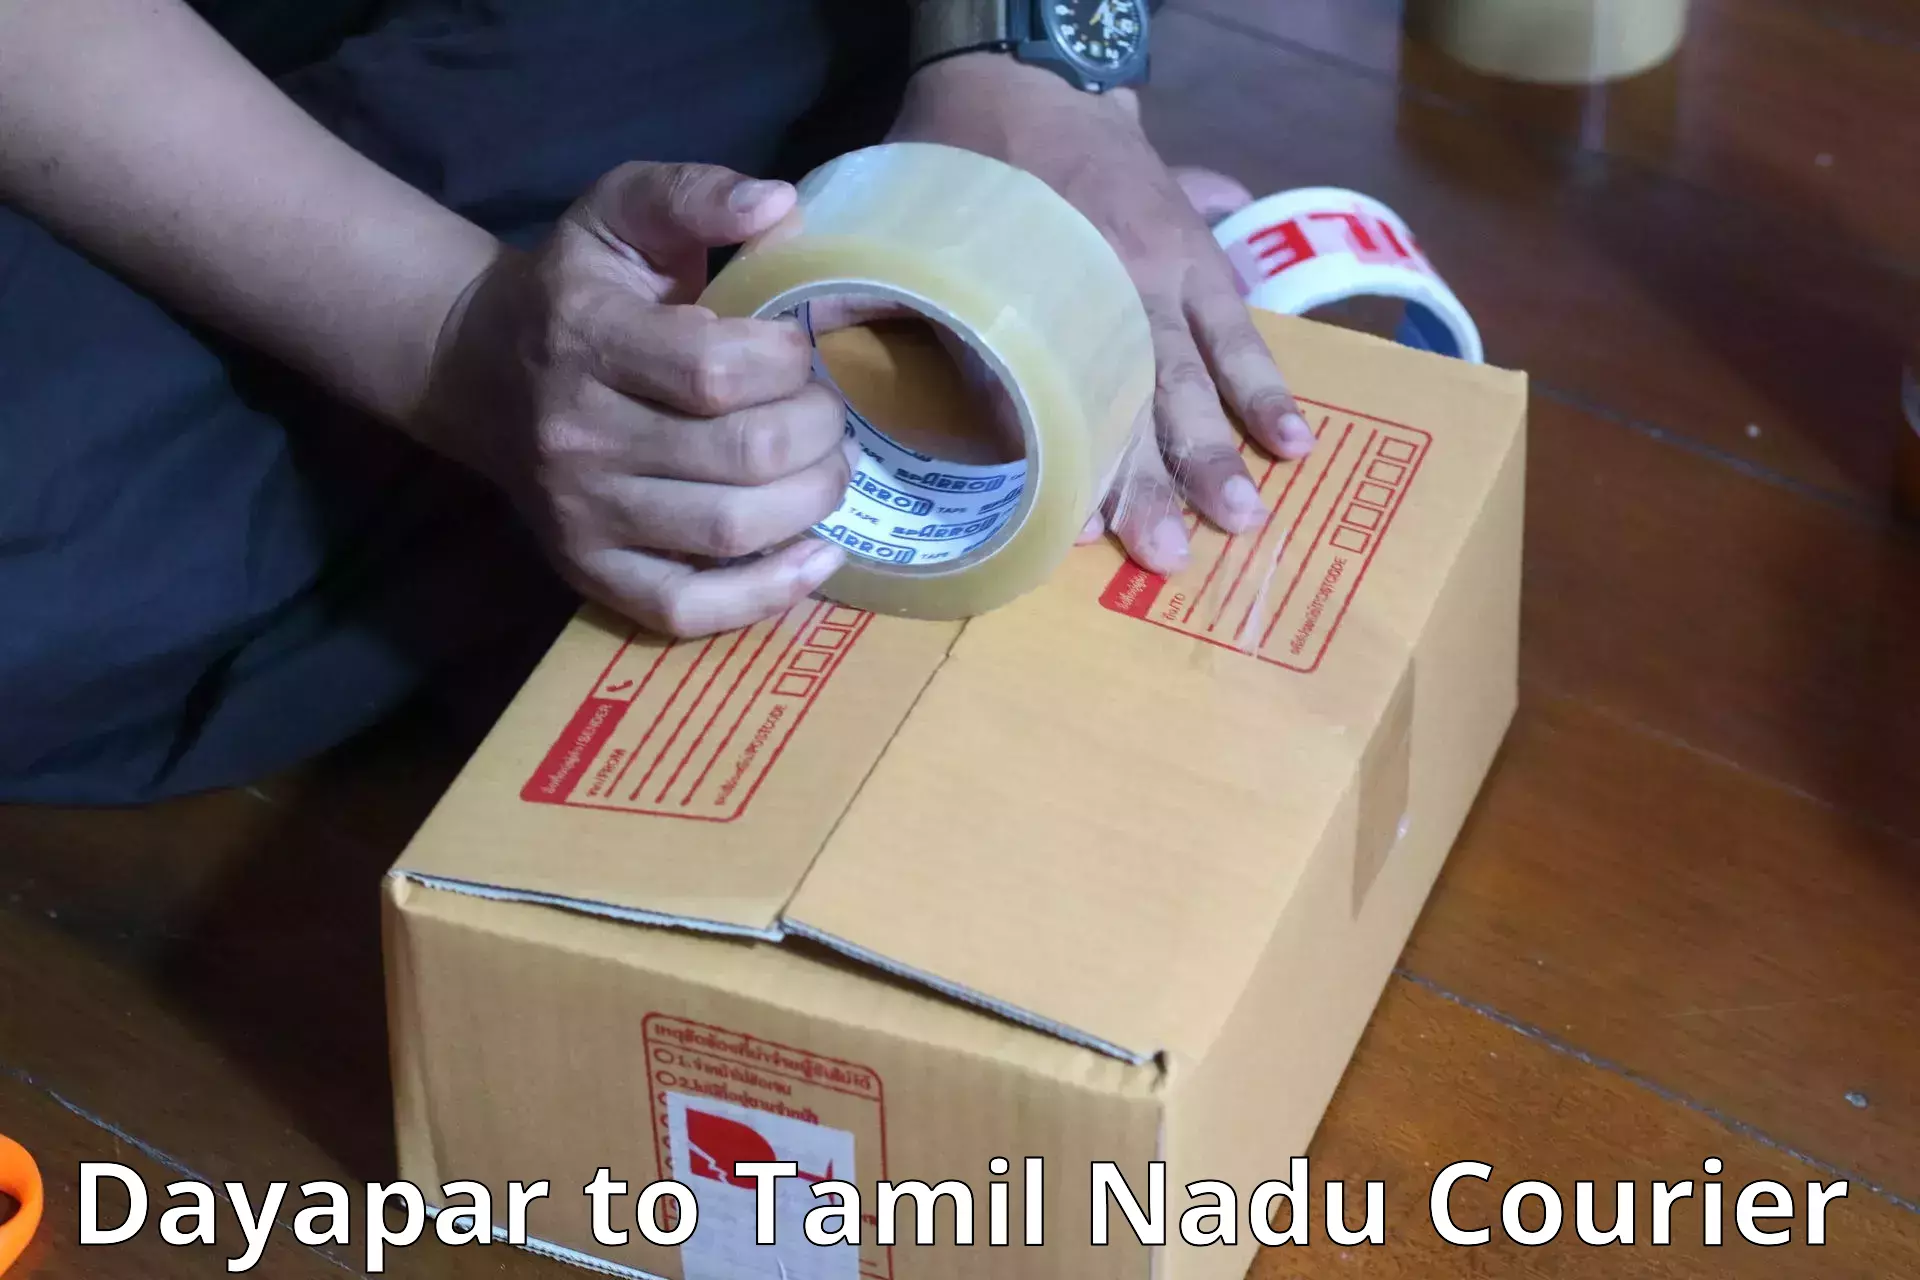 Luggage shipment specialists Dayapar to Tamil Nadu